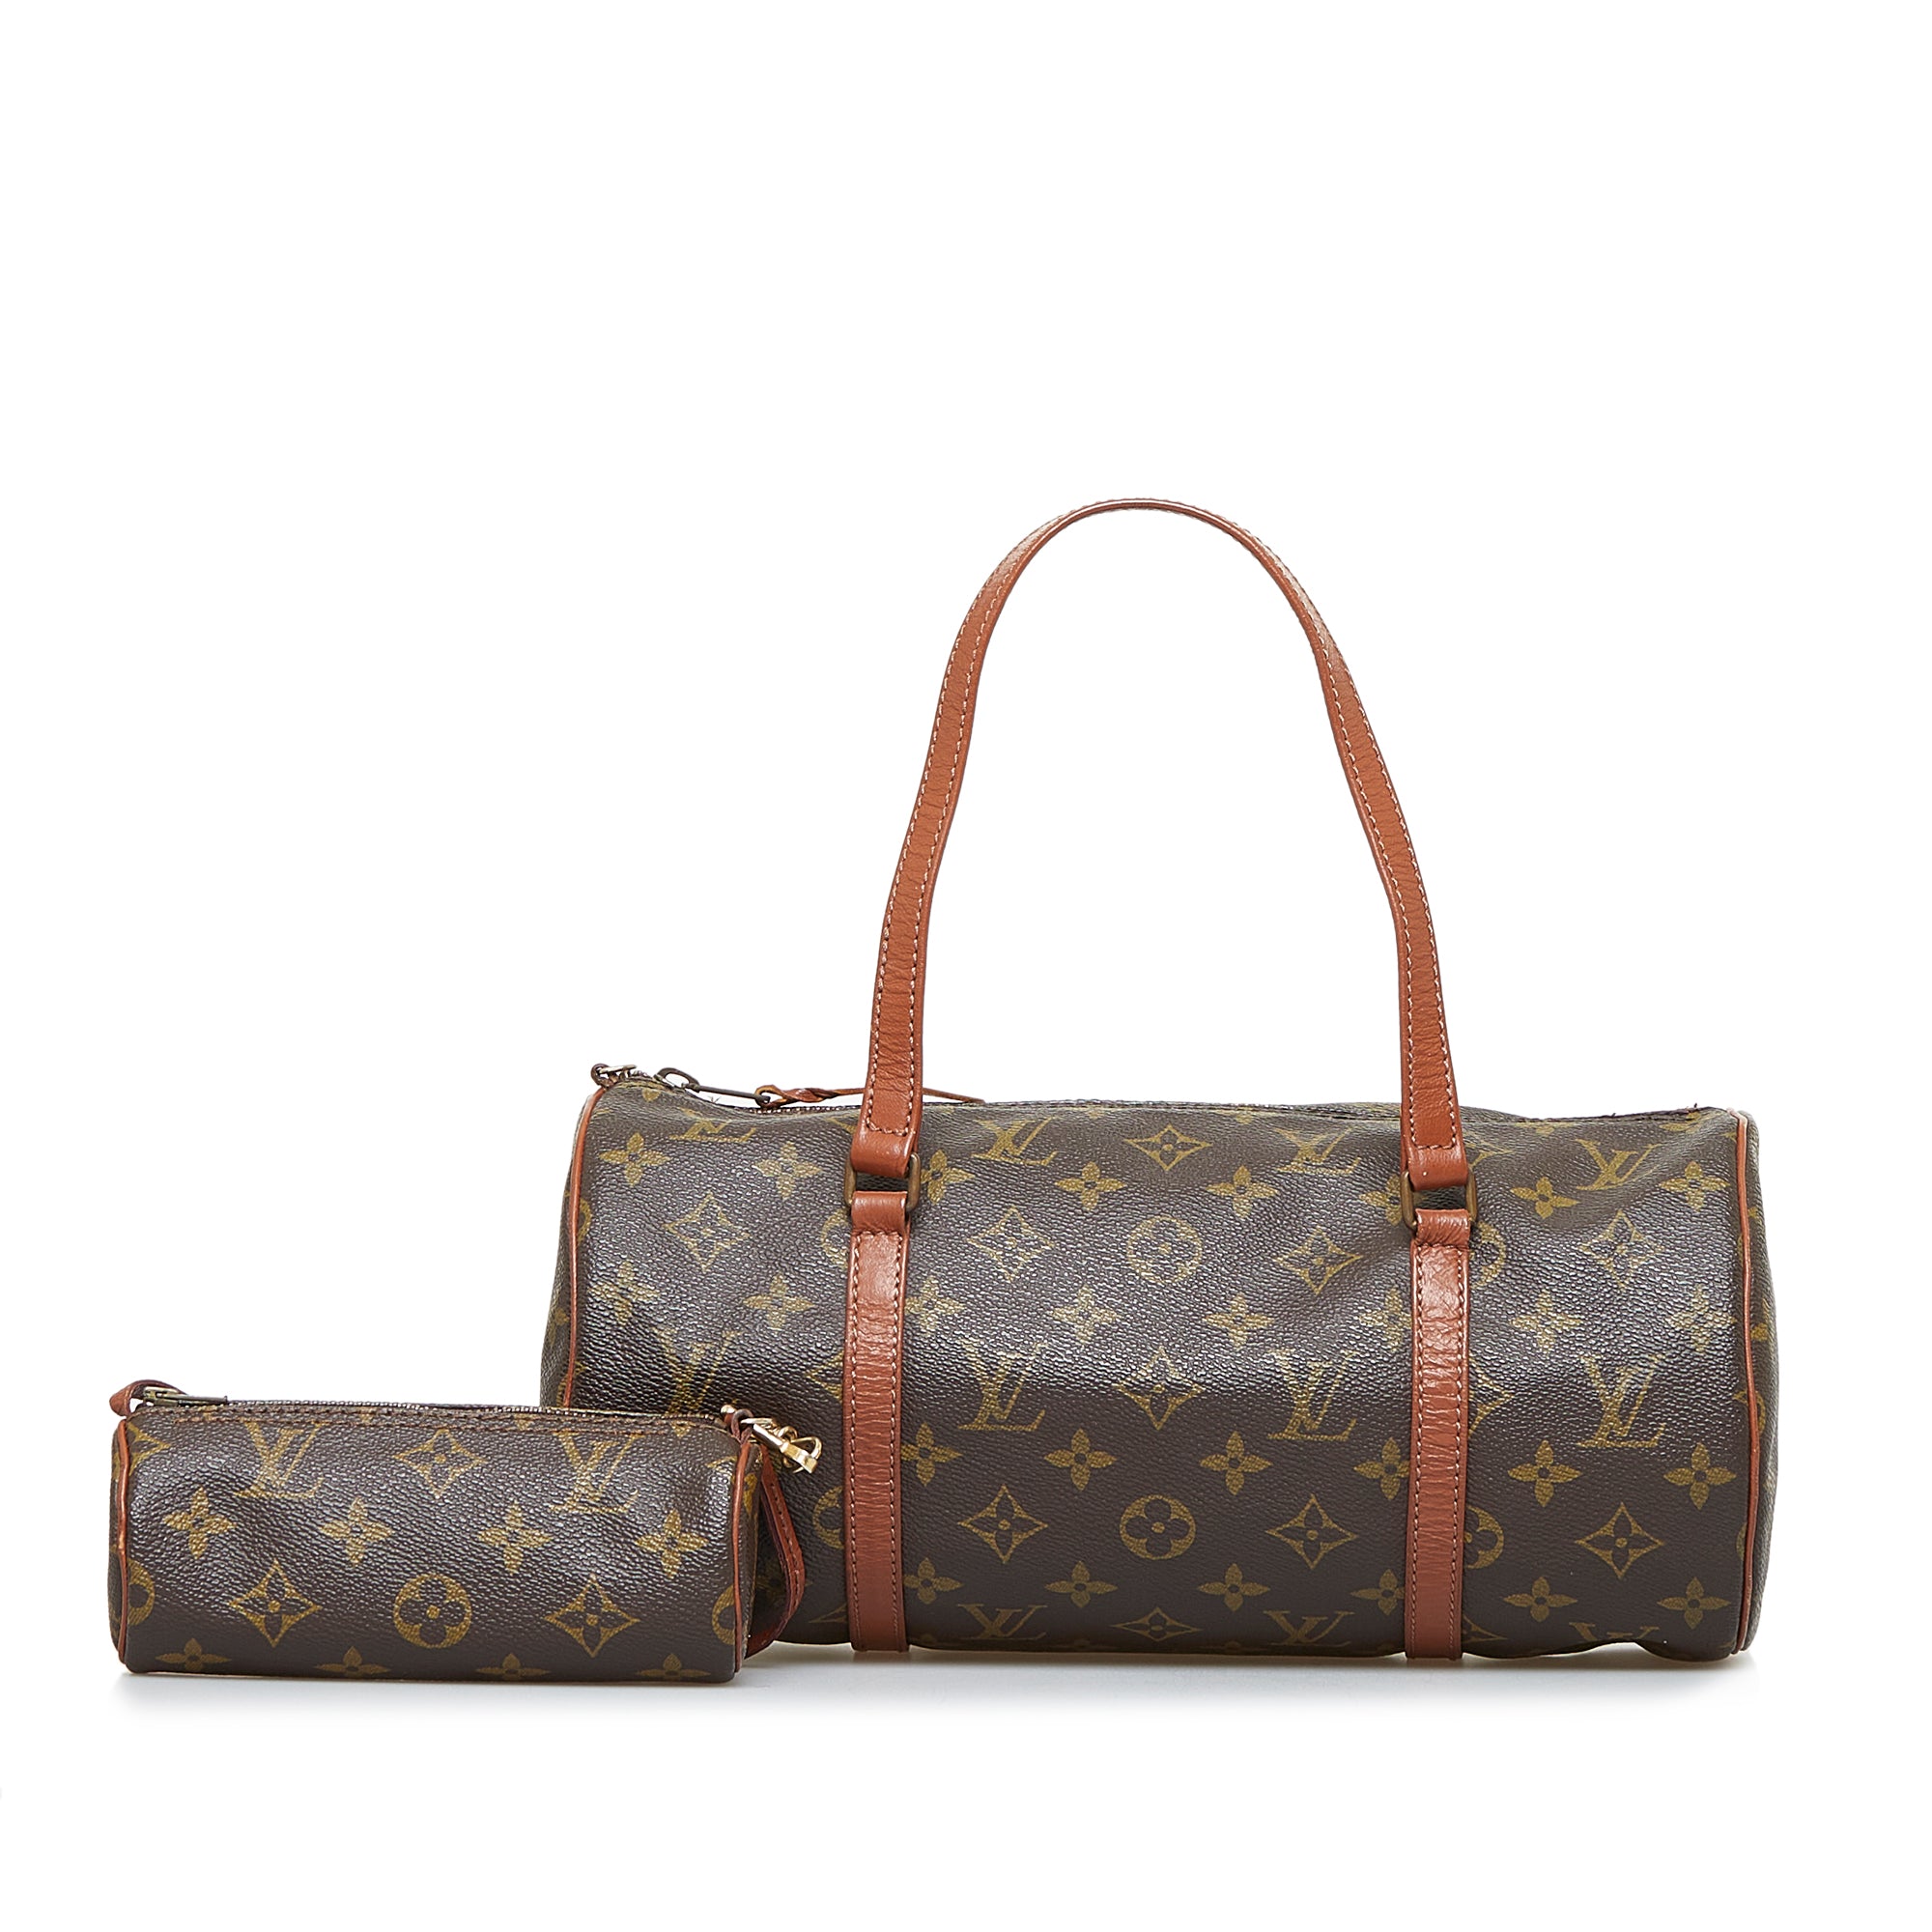 LOUIS VUITTON Louis Vuitton Monogram Papillon 30 handbag with